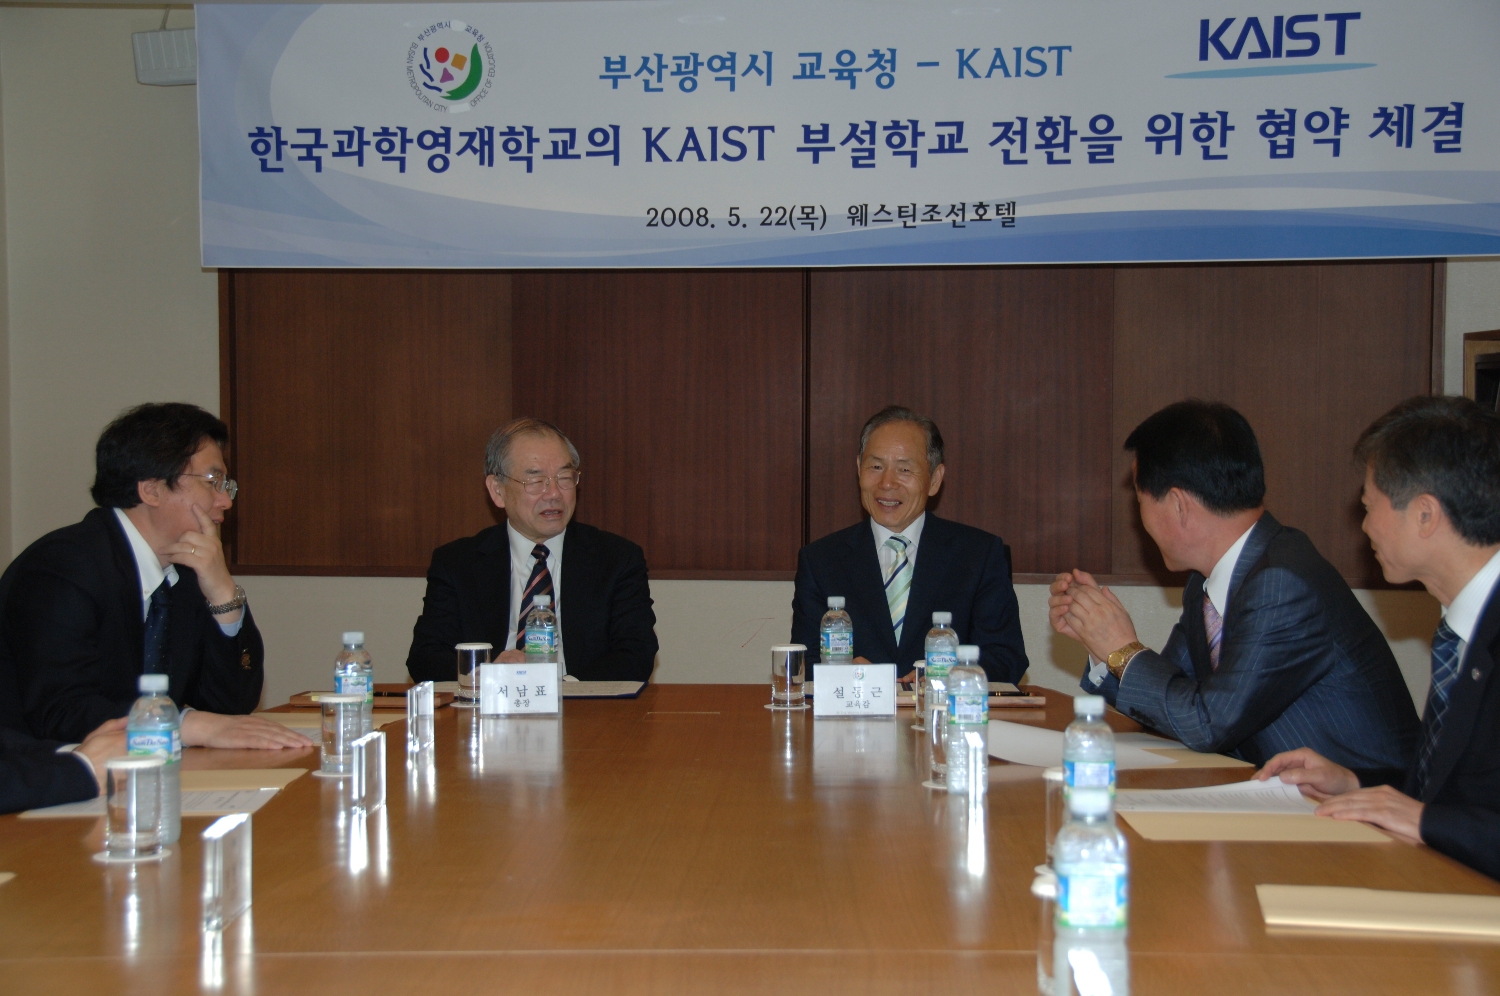 한국과학영재학교의 KAIST 부설학교 전환을 위한 협약 체결 [2008.05.22]